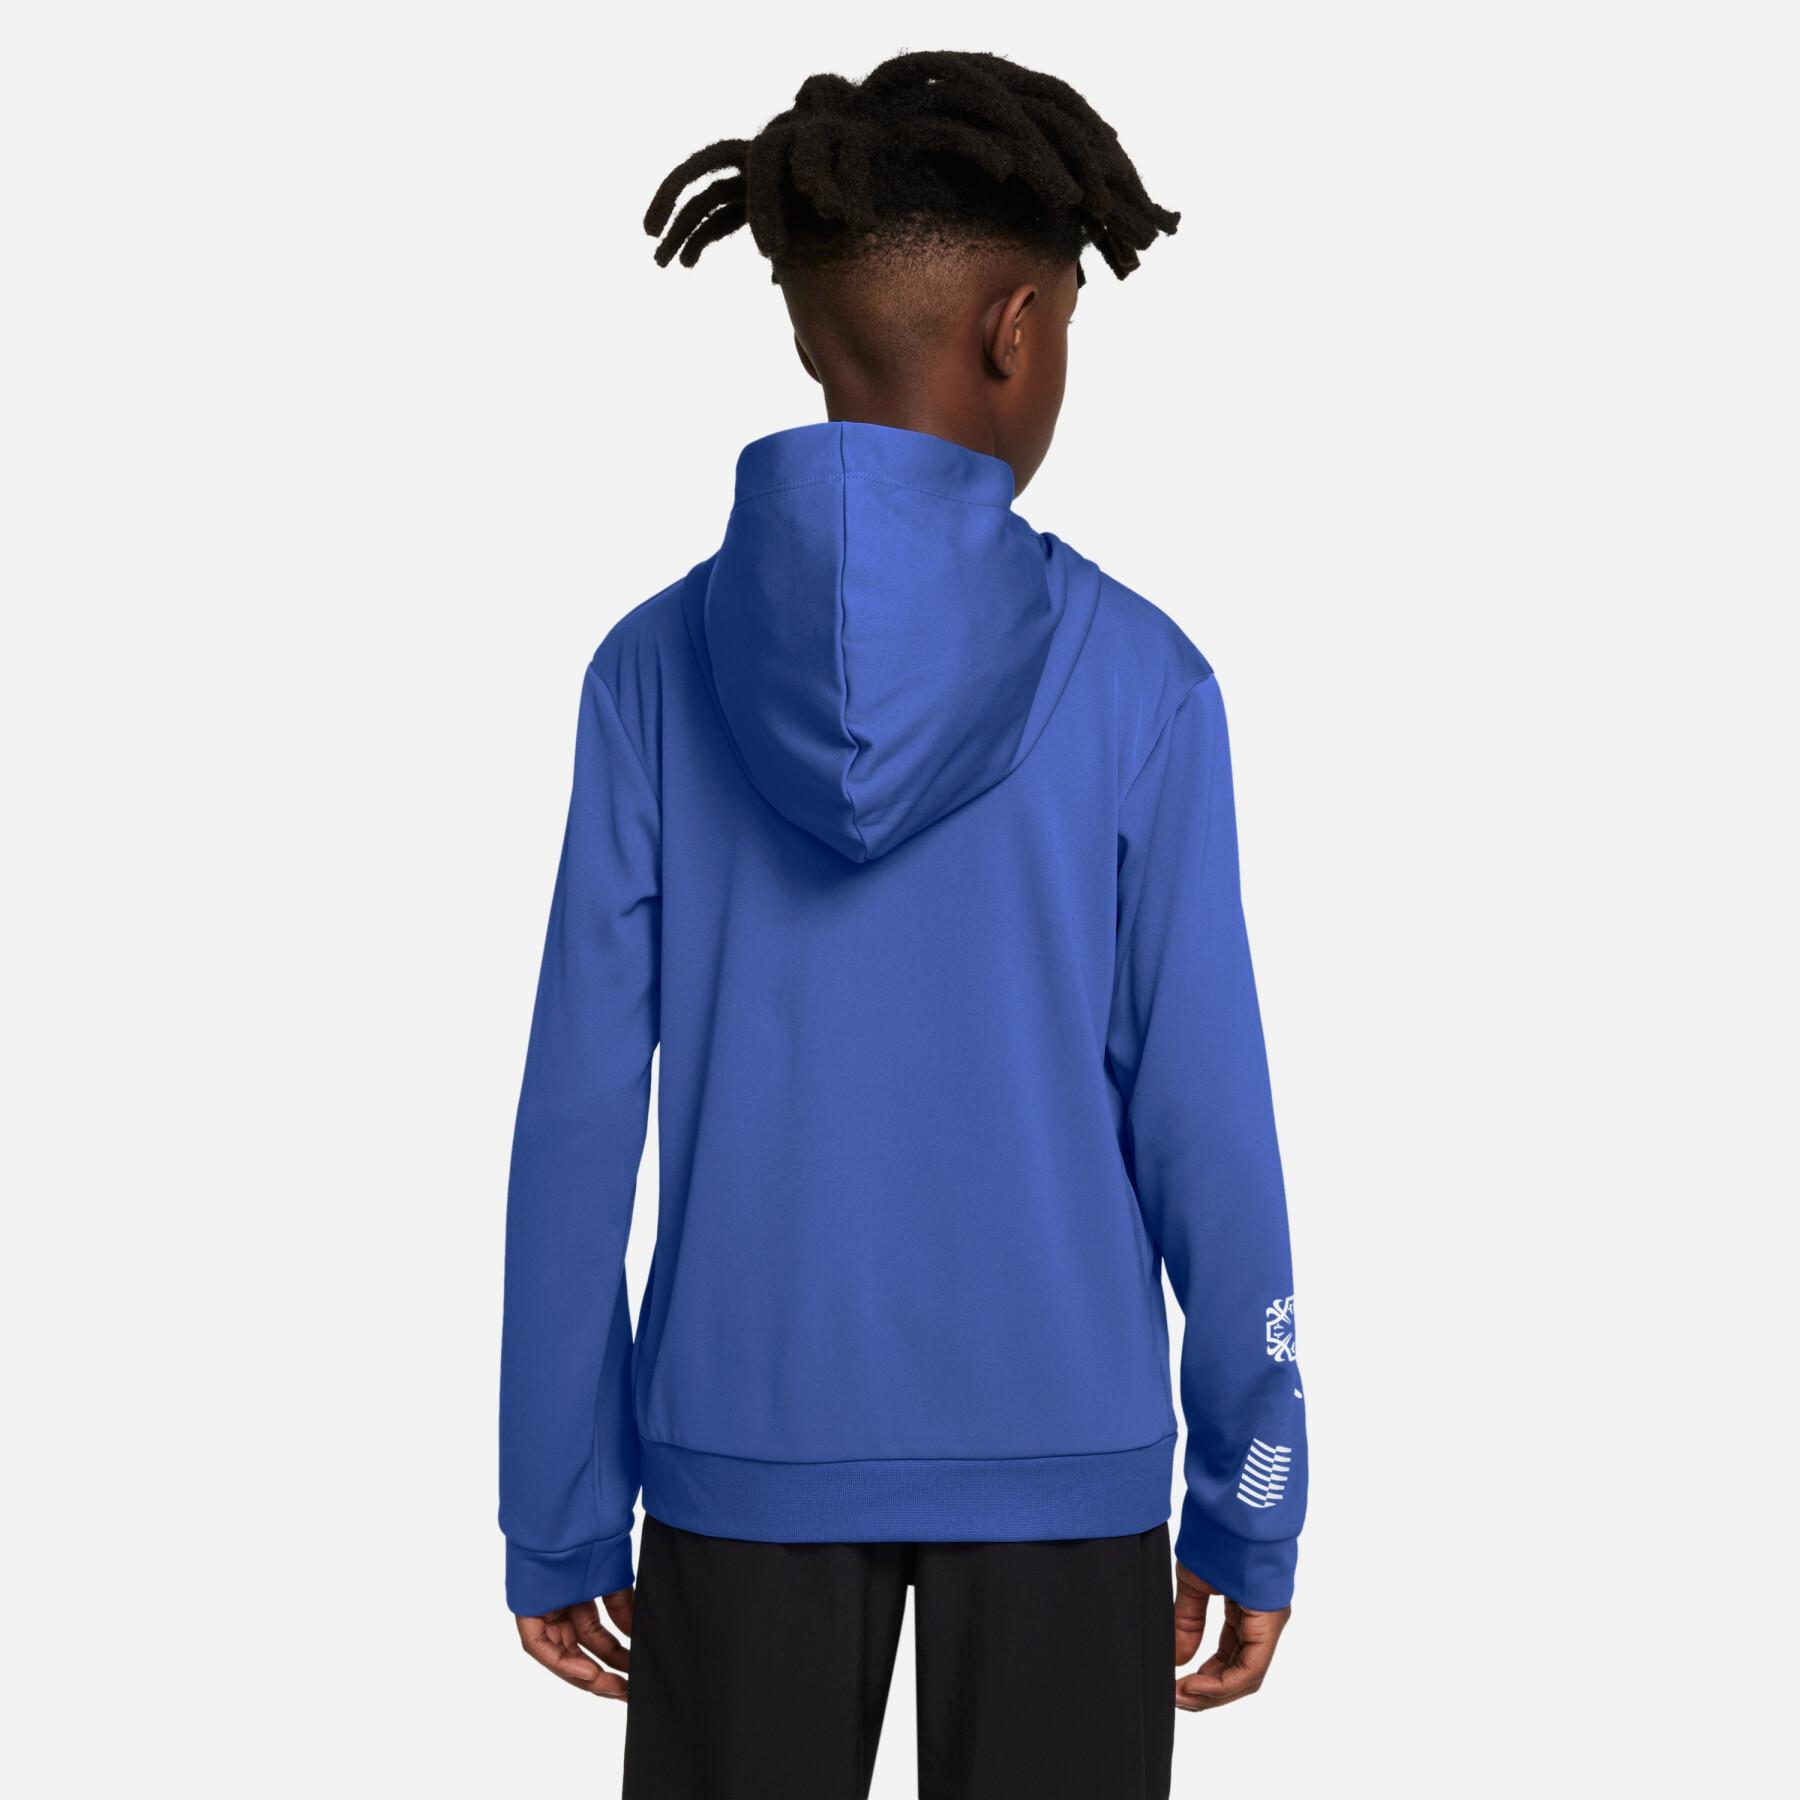 Kinder sweatshirt met capuchon Nike Cr7 Dry